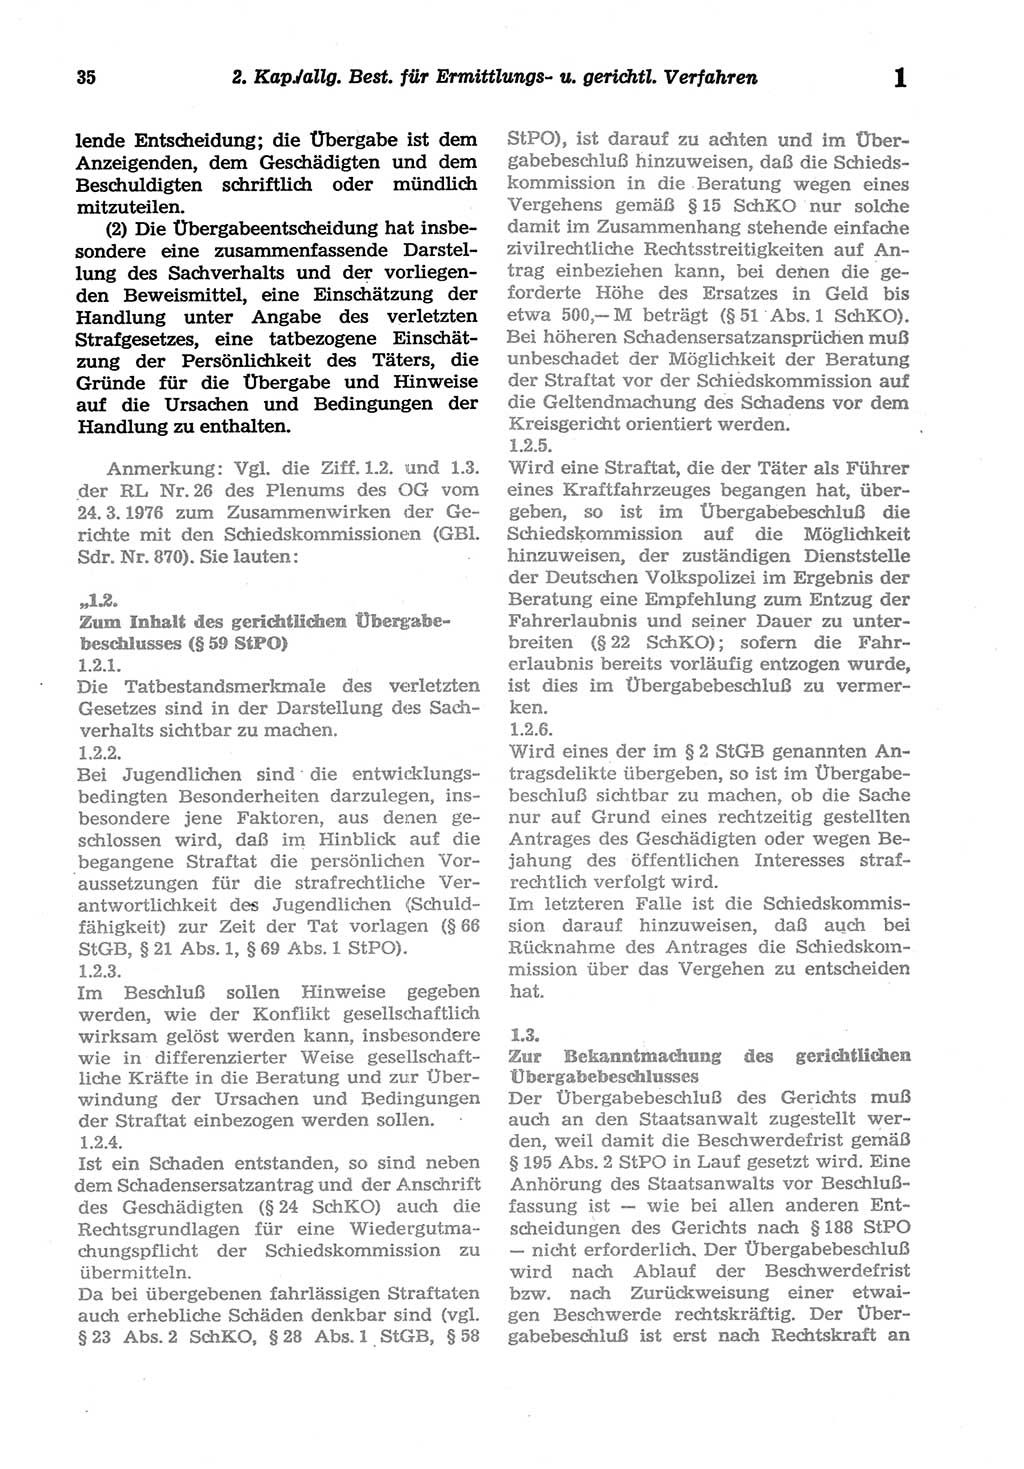 Strafprozeßordnung (StPO) der Deutschen Demokratischen Republik (DDR) sowie angrenzende Gesetze und Bestimmungen 1977, Seite 35 (StPO DDR Ges. Best. 1977, S. 35)